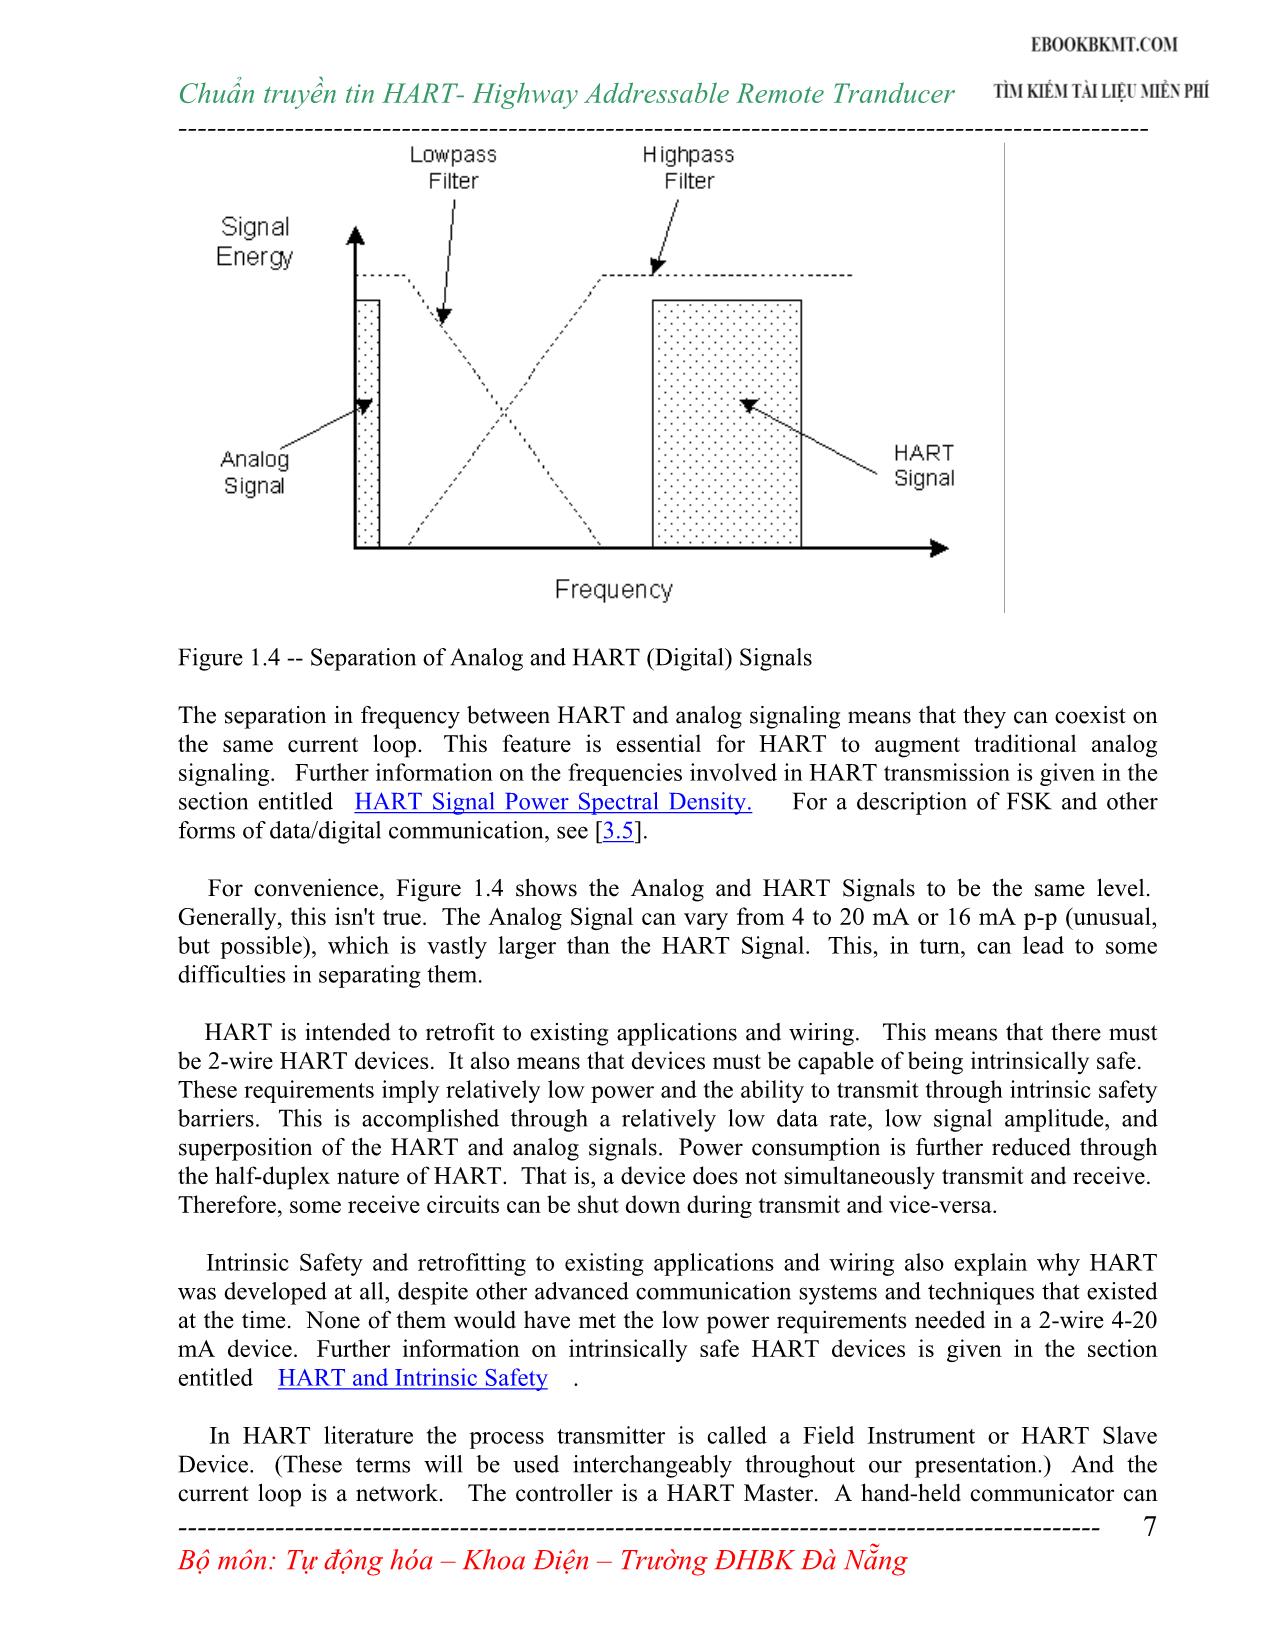 Giáo trình Chuẩn truyền tin Hart trong đo lường và điều khiển tự động mạng công nghiệp trang 7